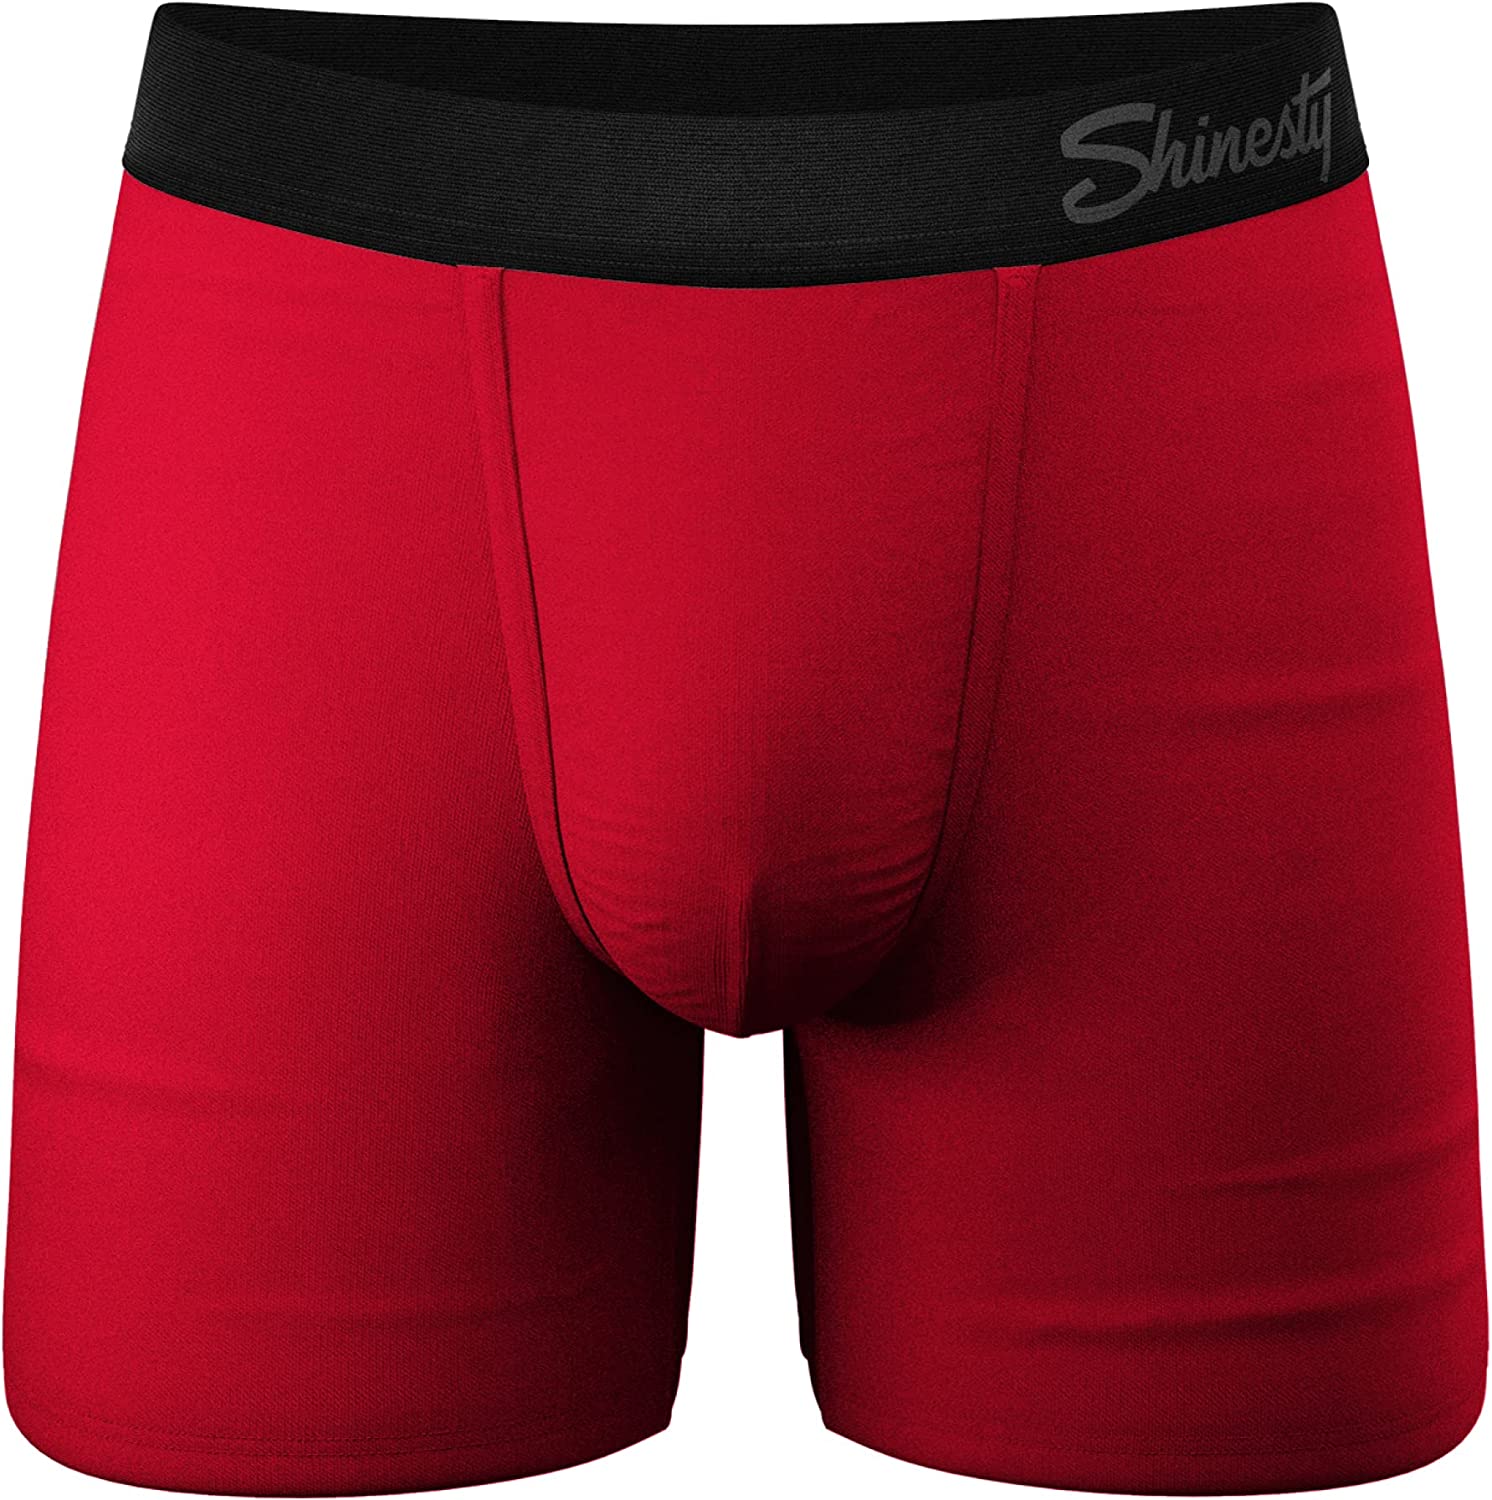  Shinesty Hammock Support Mens Underwear Boxer